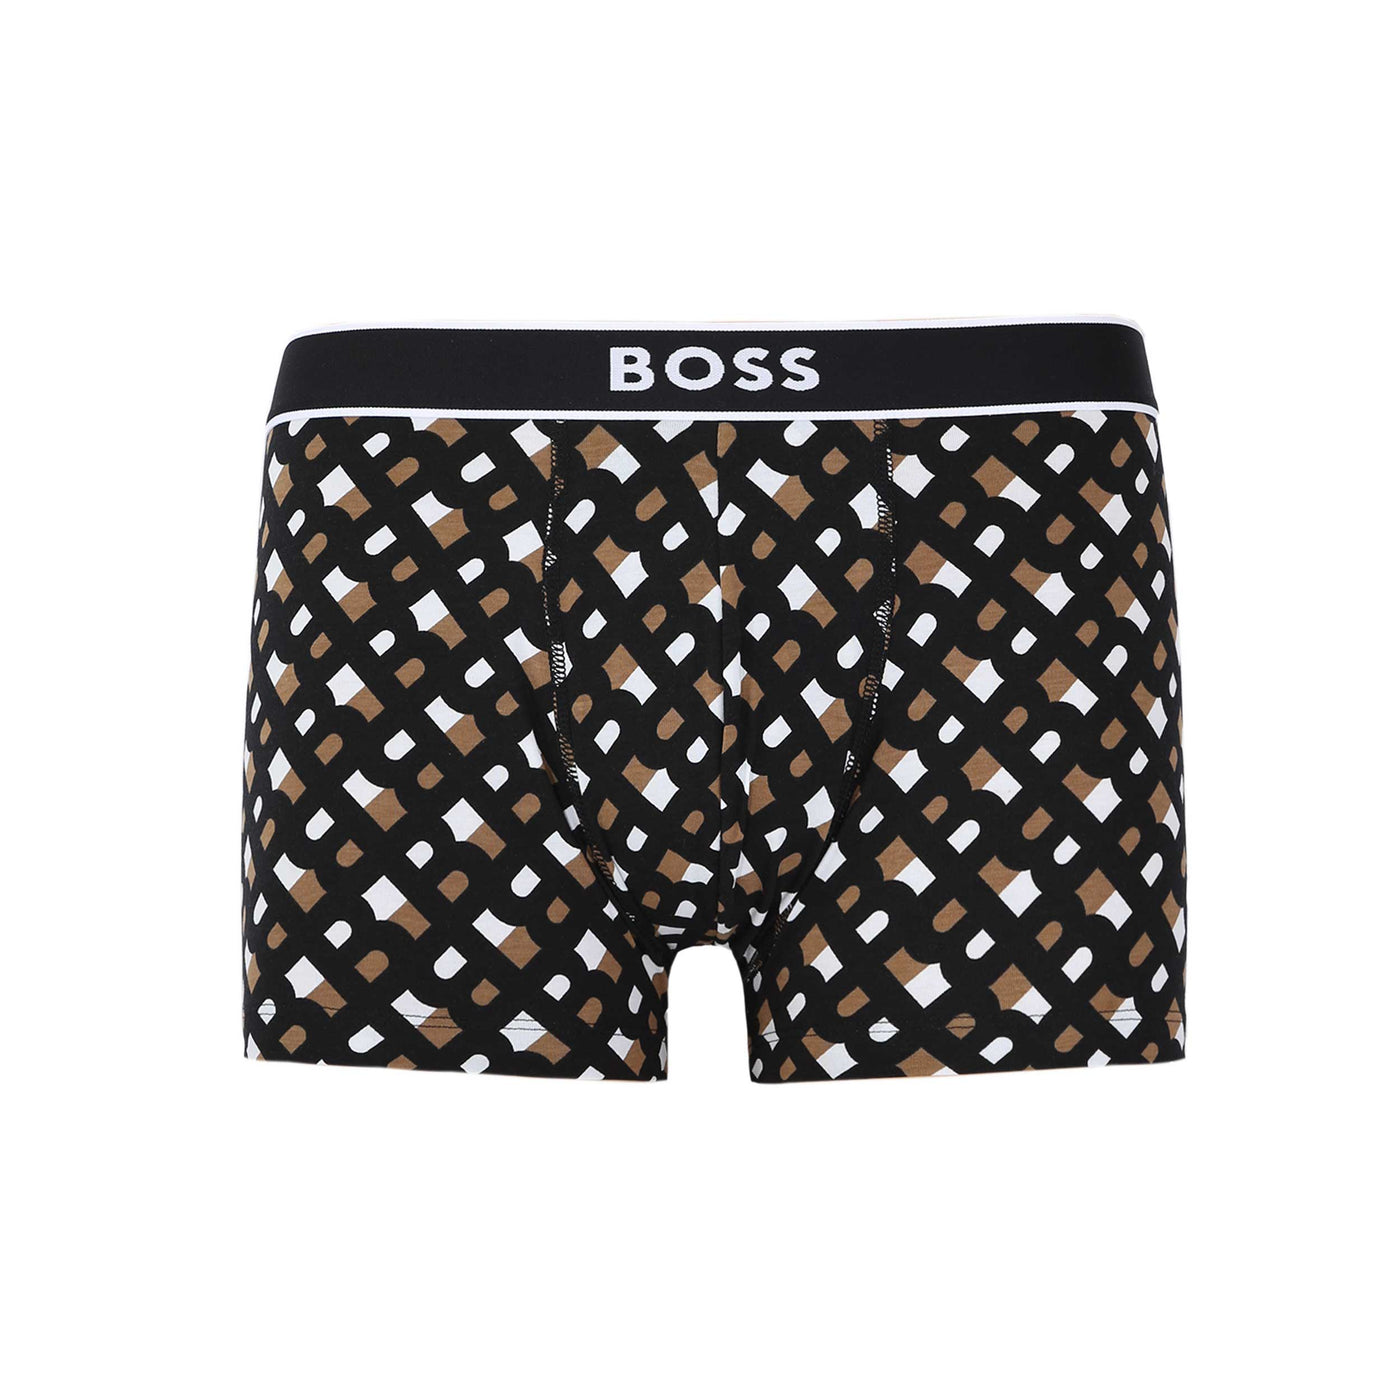 BOSS Trunk 24 Print Underwear in Black & Beige Mono